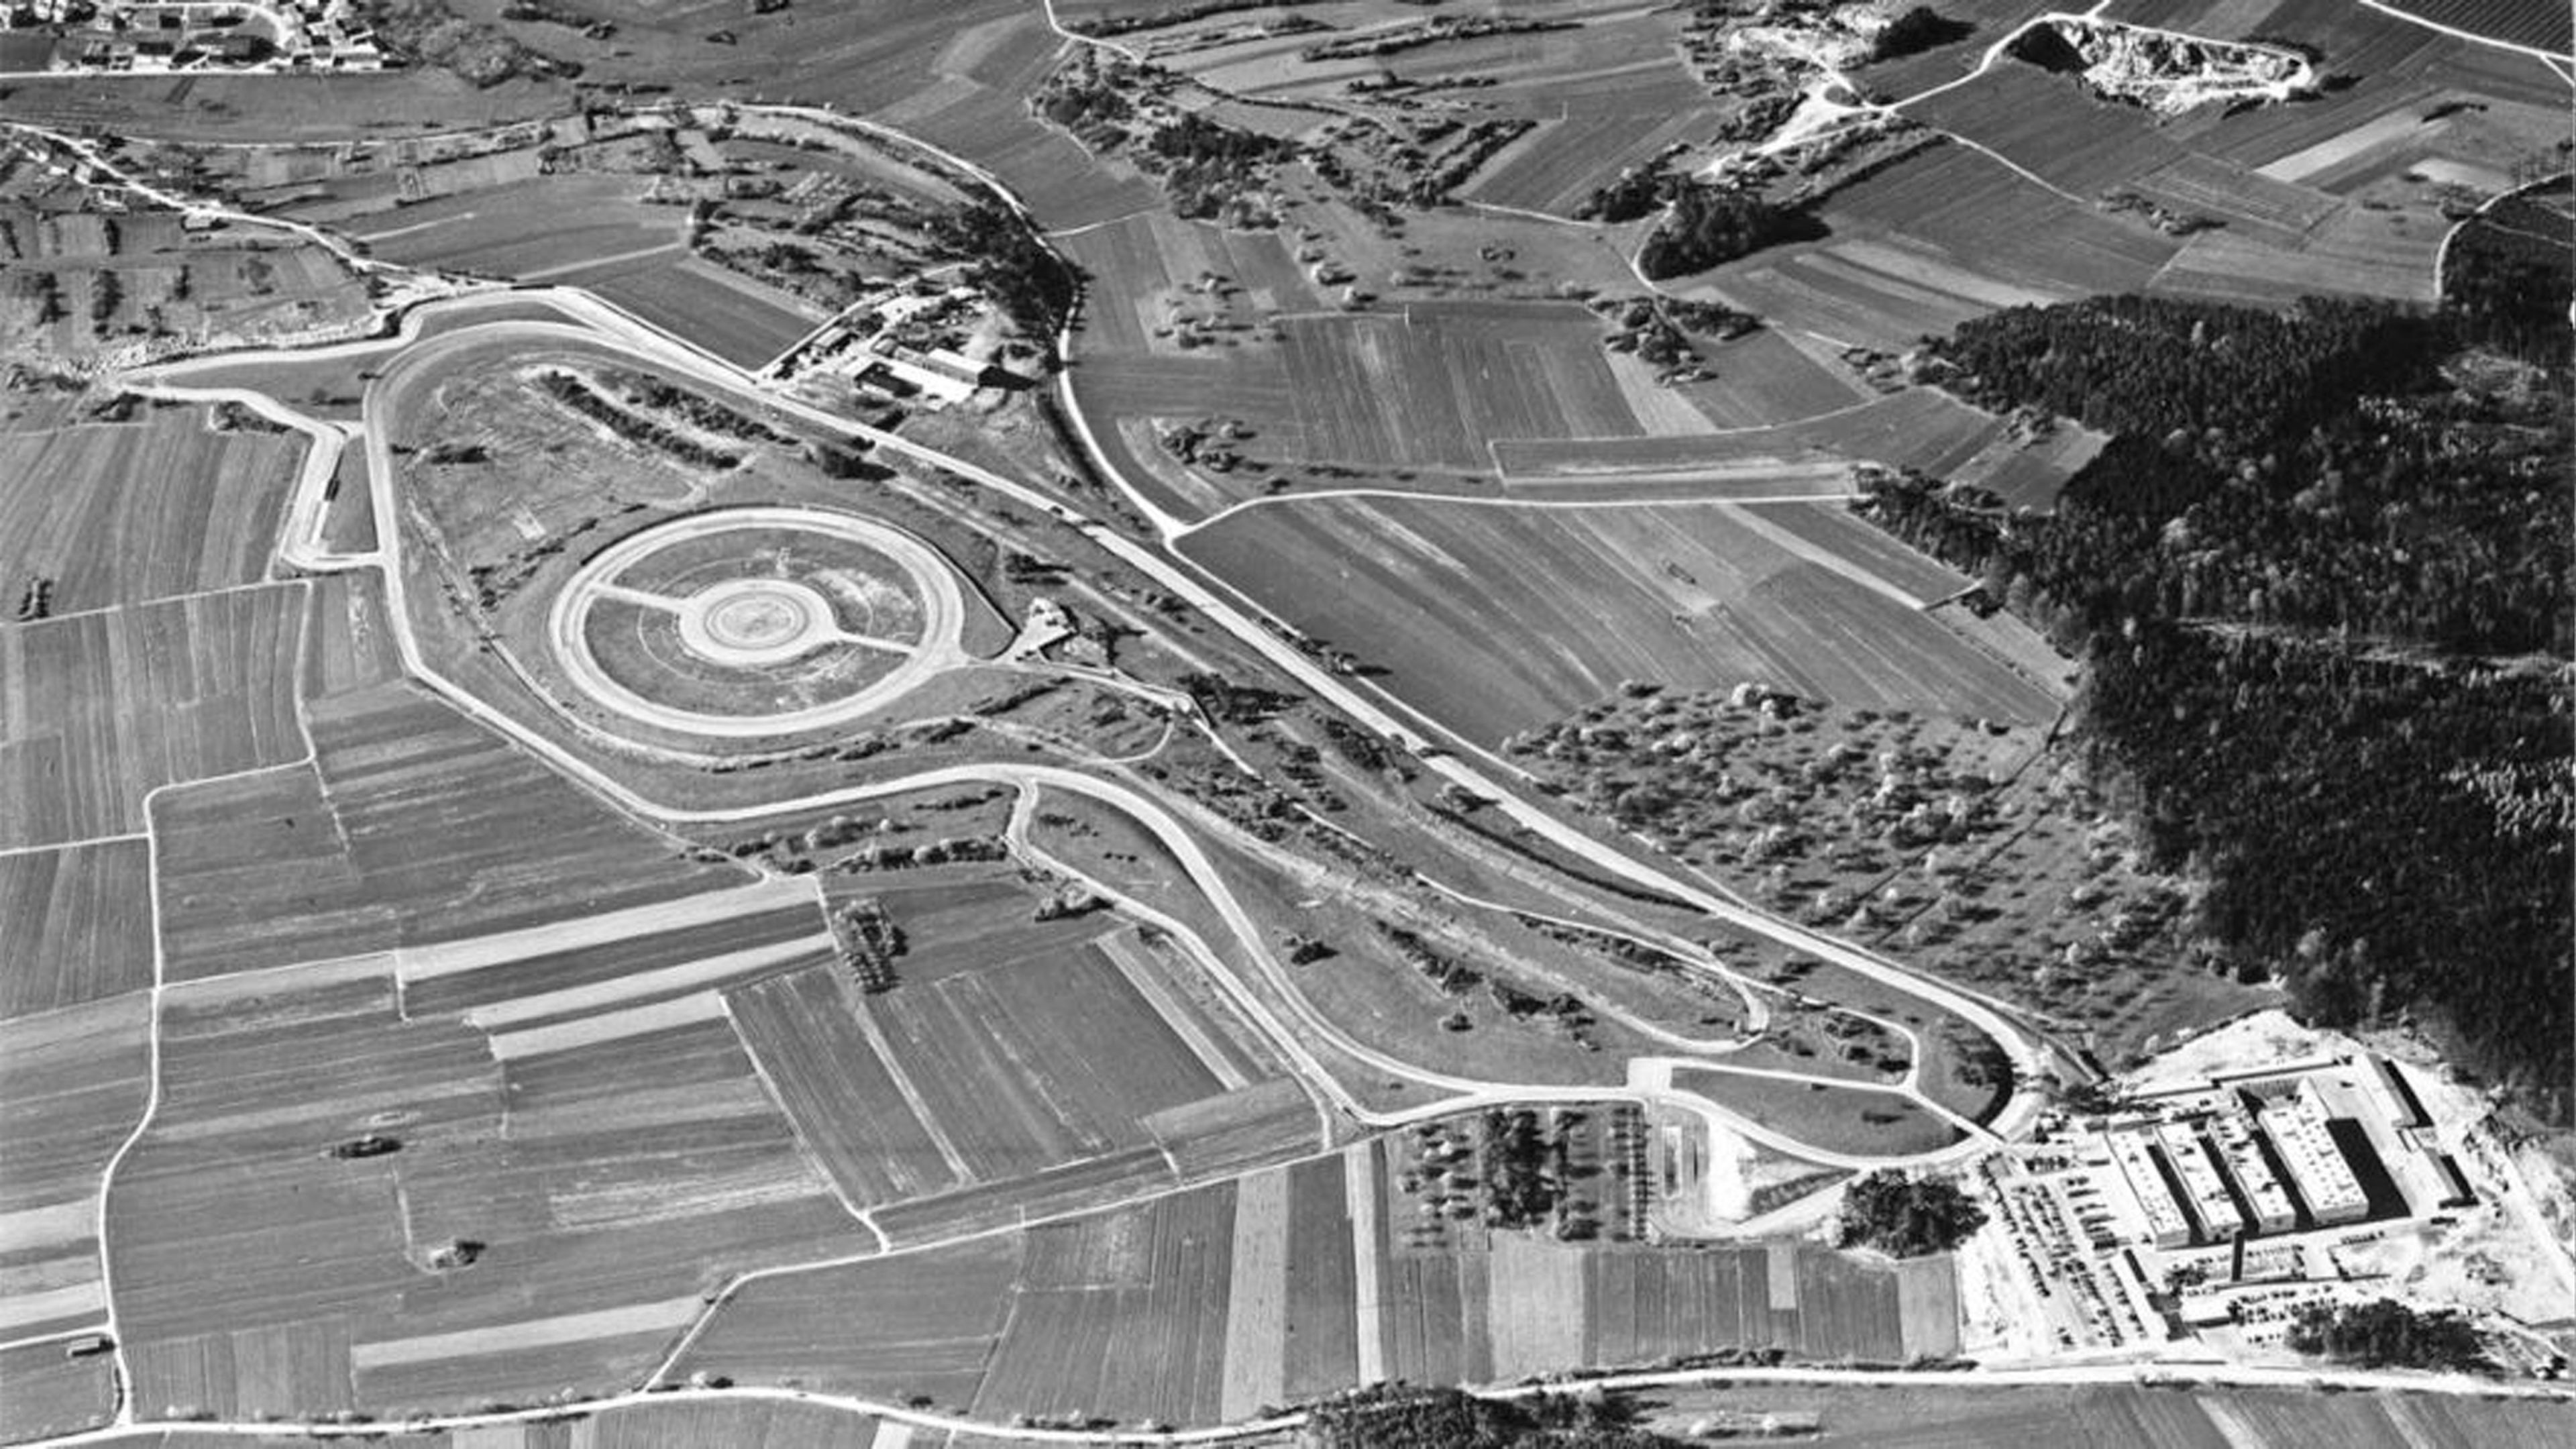 Vista aérea del Centro de desarrollo Weissach, 1972.